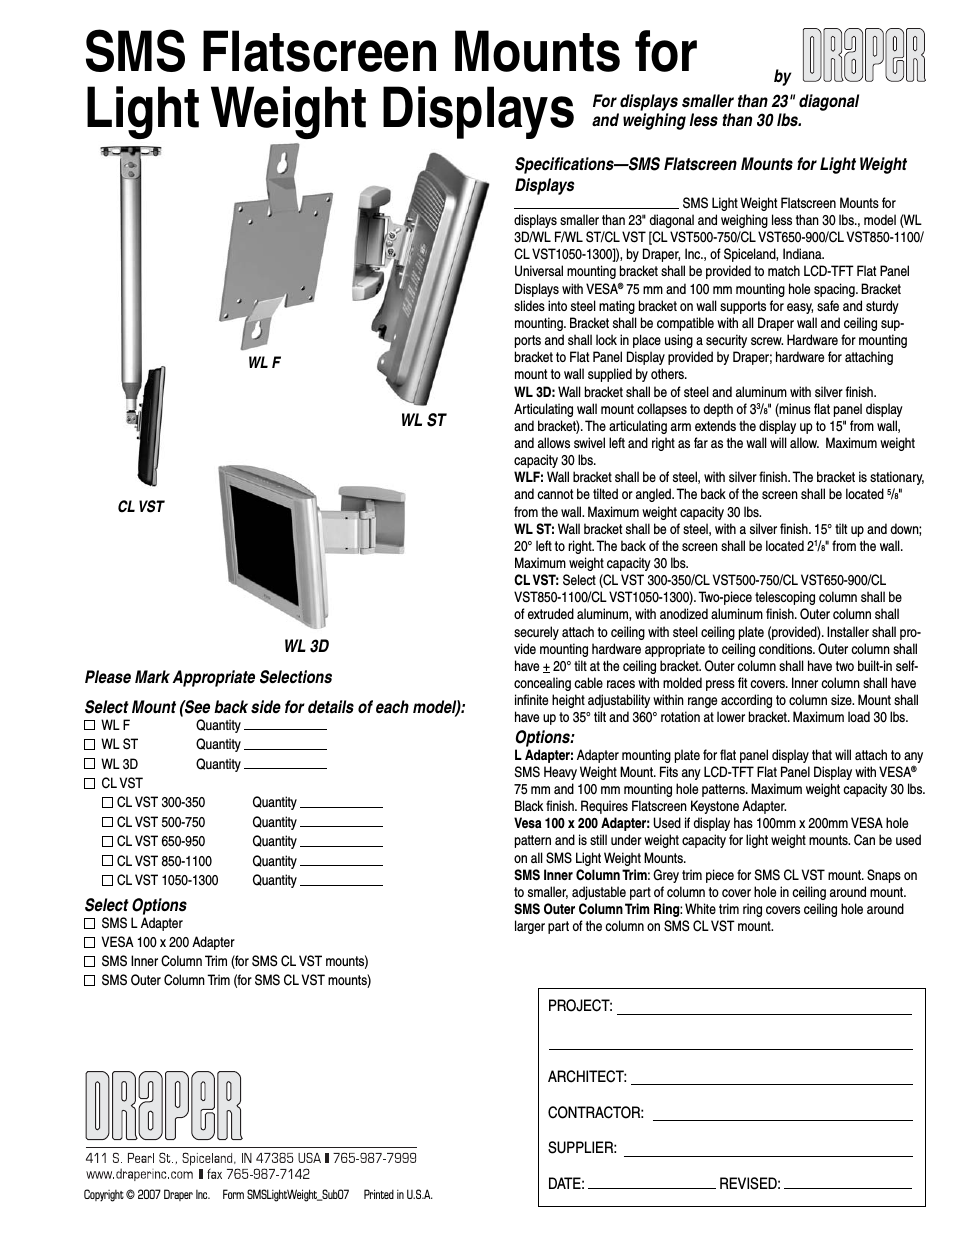 SMS Flatscreen Wall Mount - WLF CL VST 650-950